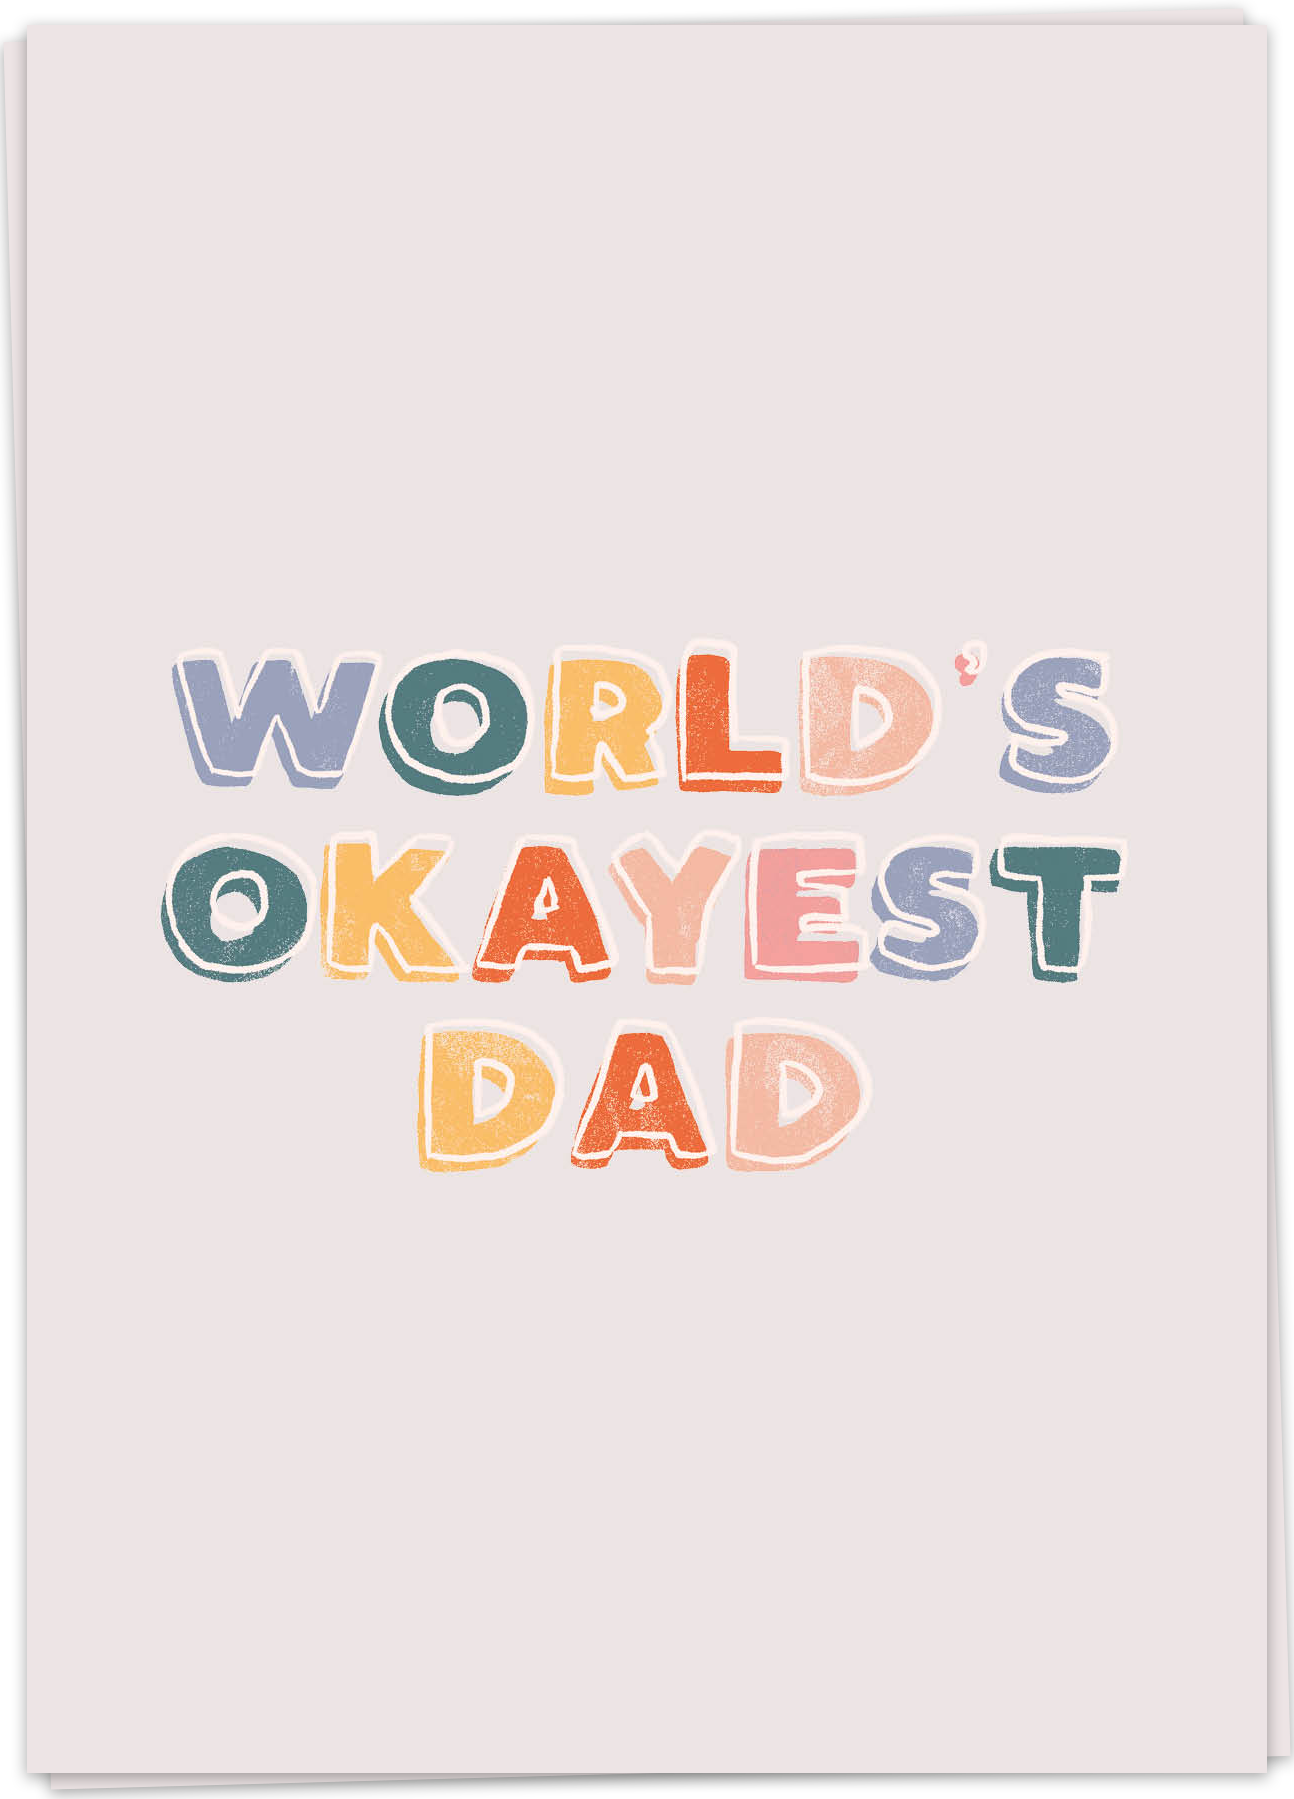 Dadlove - World's okayest dad